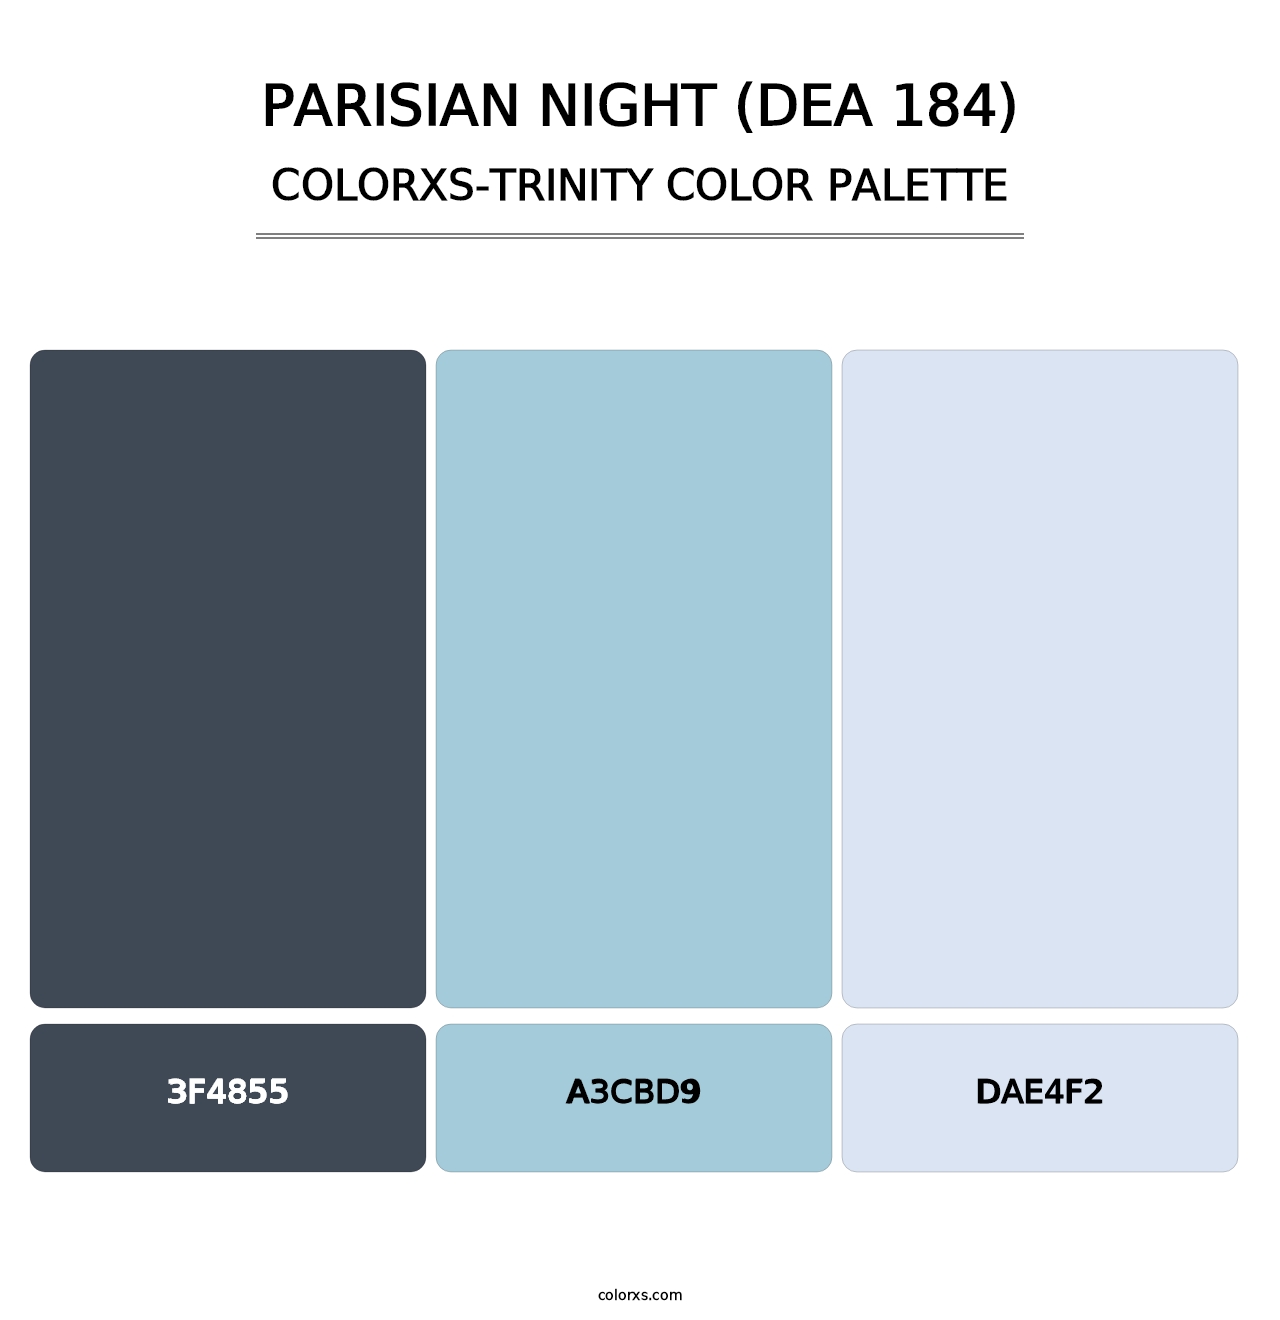 Parisian Night (DEA 184) - Colorxs Trinity Palette